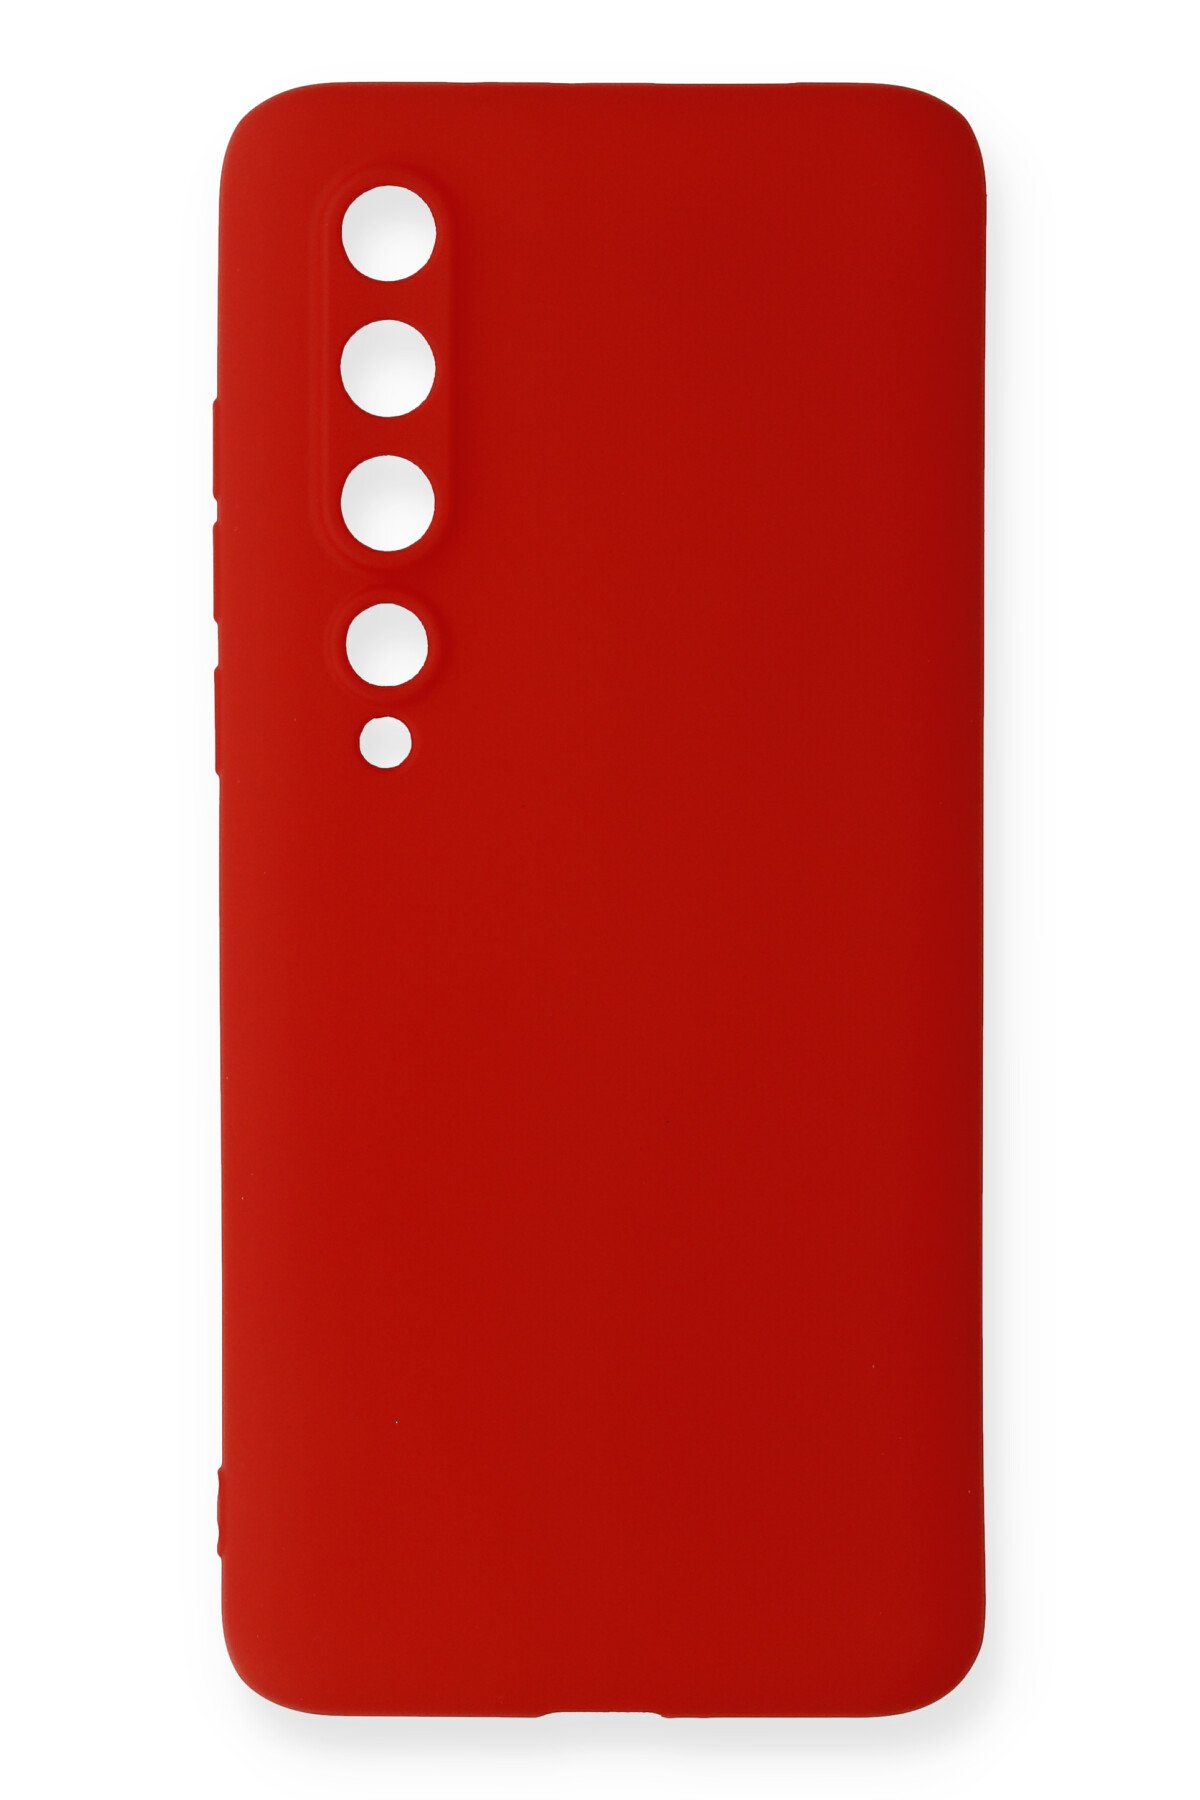 NewFace Newface Xiaomi Mi 10 Kılıf Premium Rubber Silikon - Kırmızı